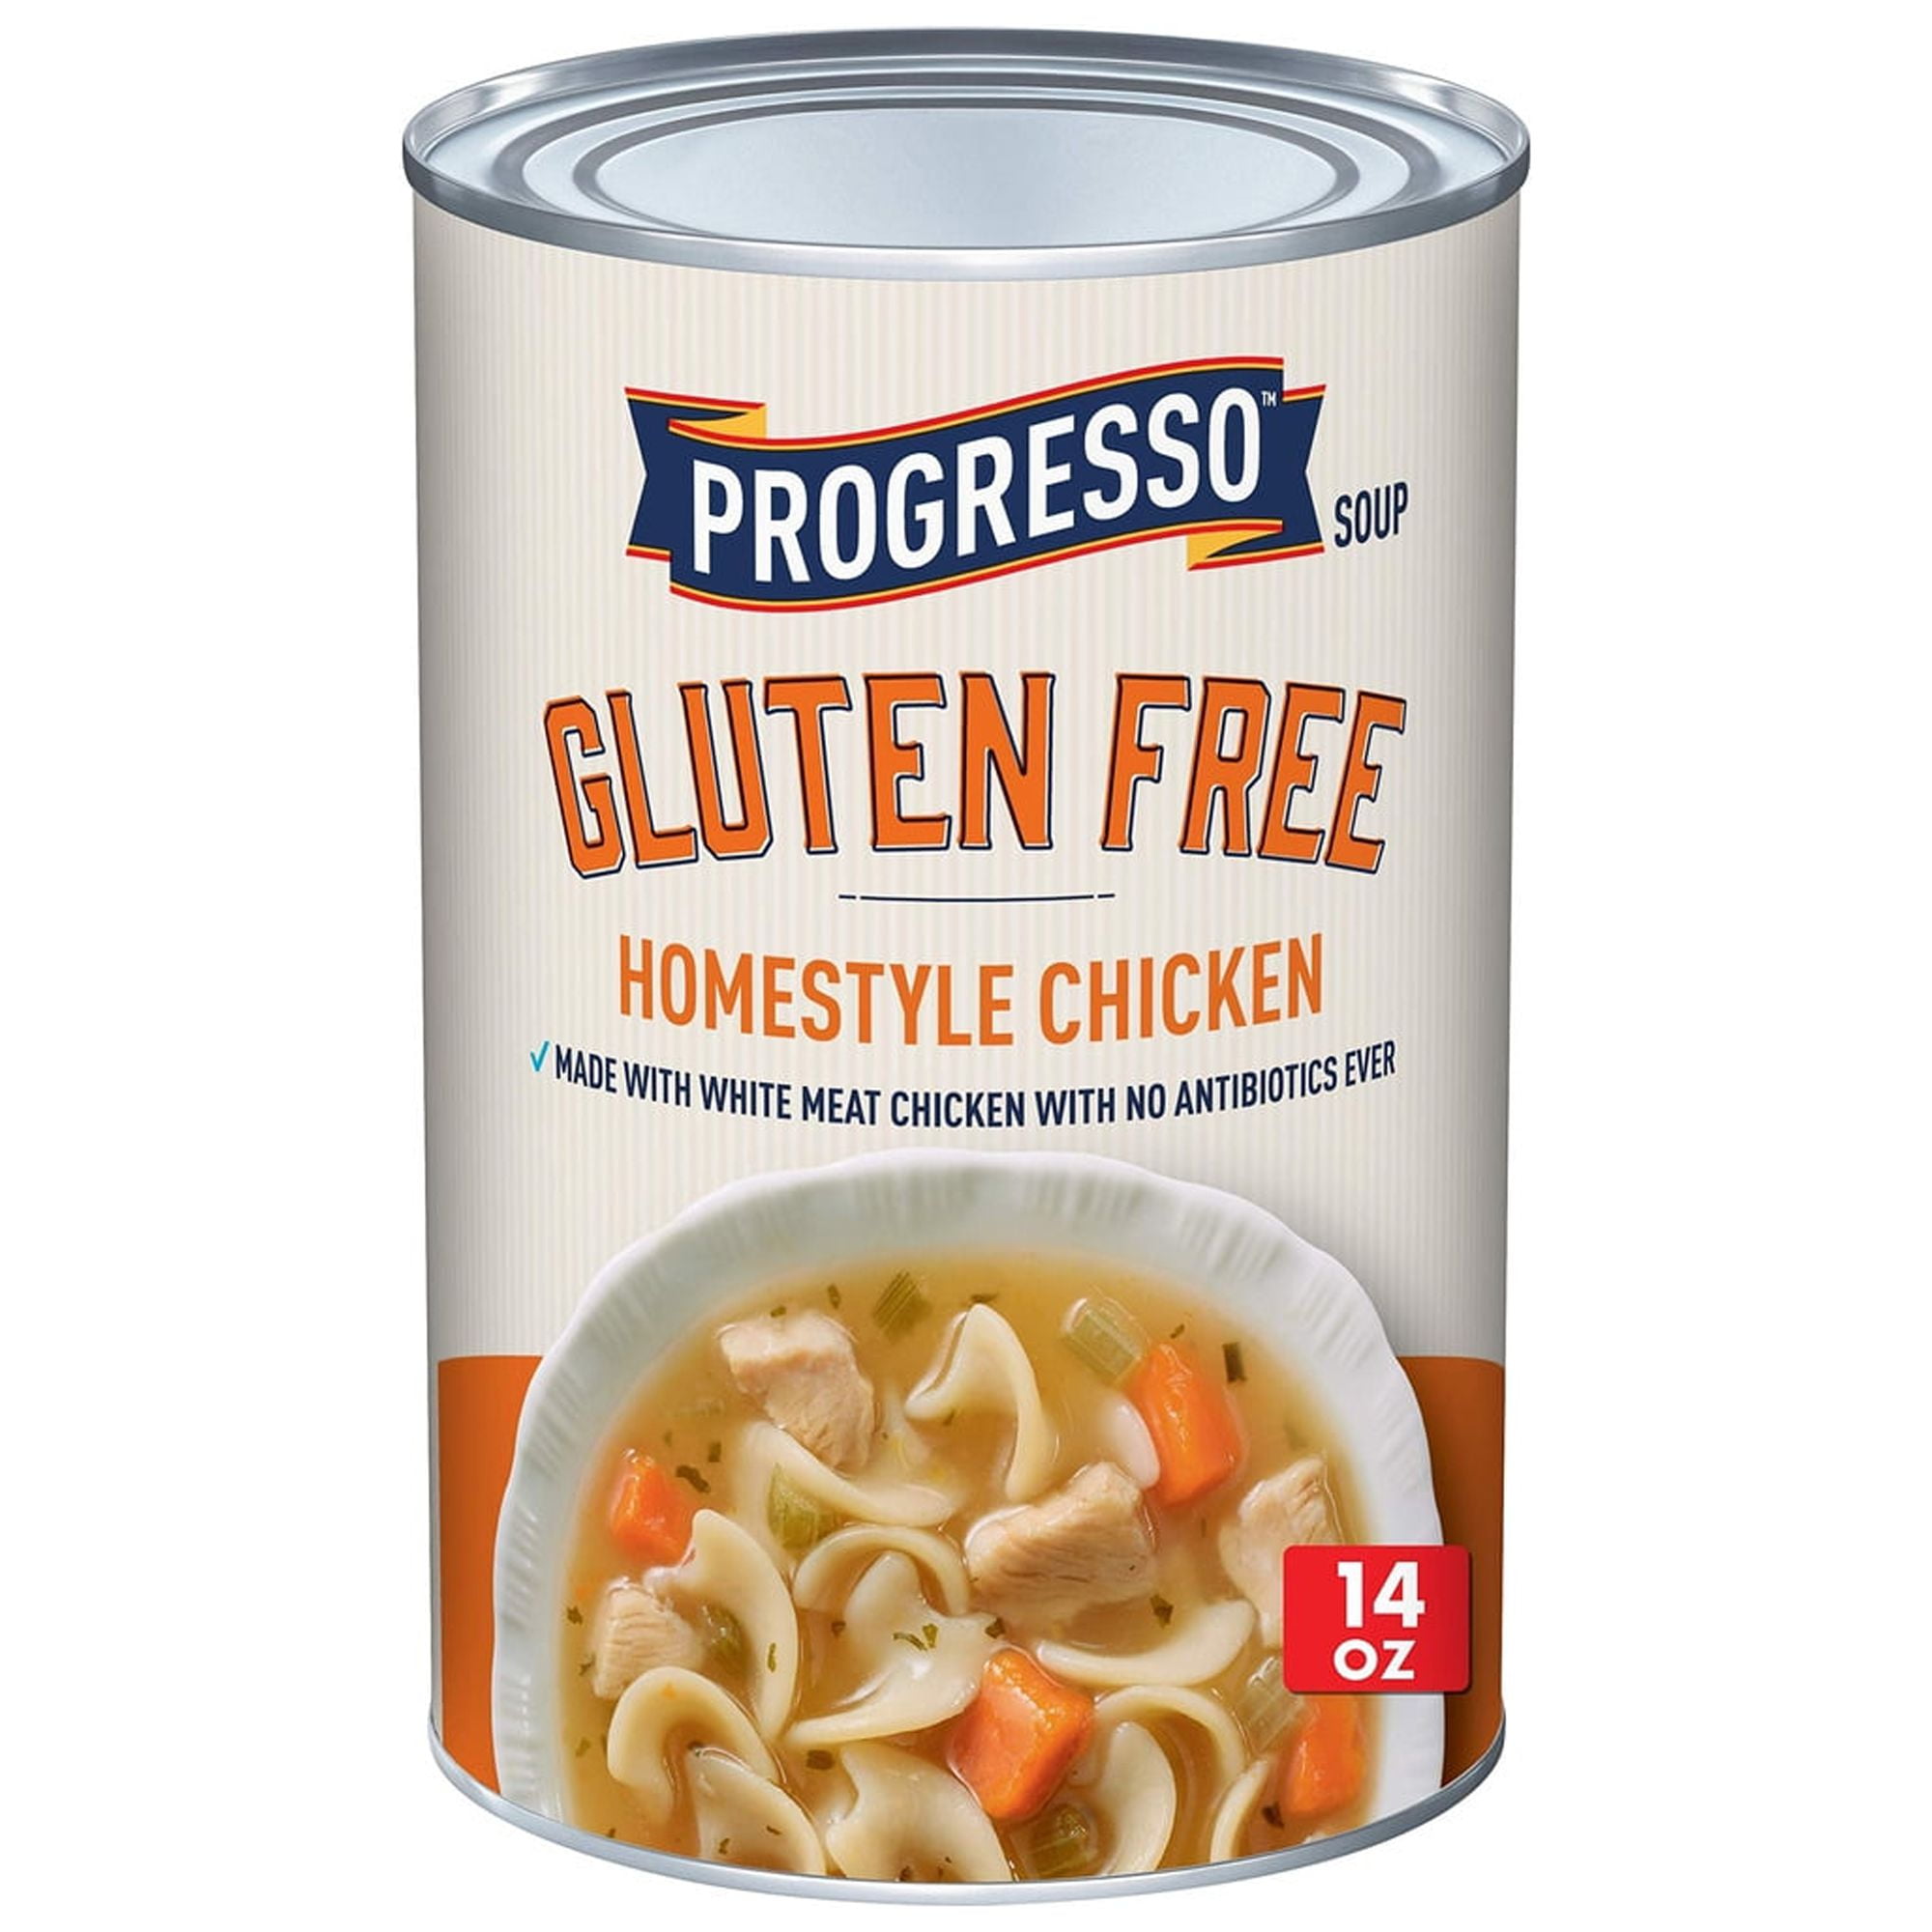 Save on Progresso Gluten Free Soup Homestyle Chicken Order Online